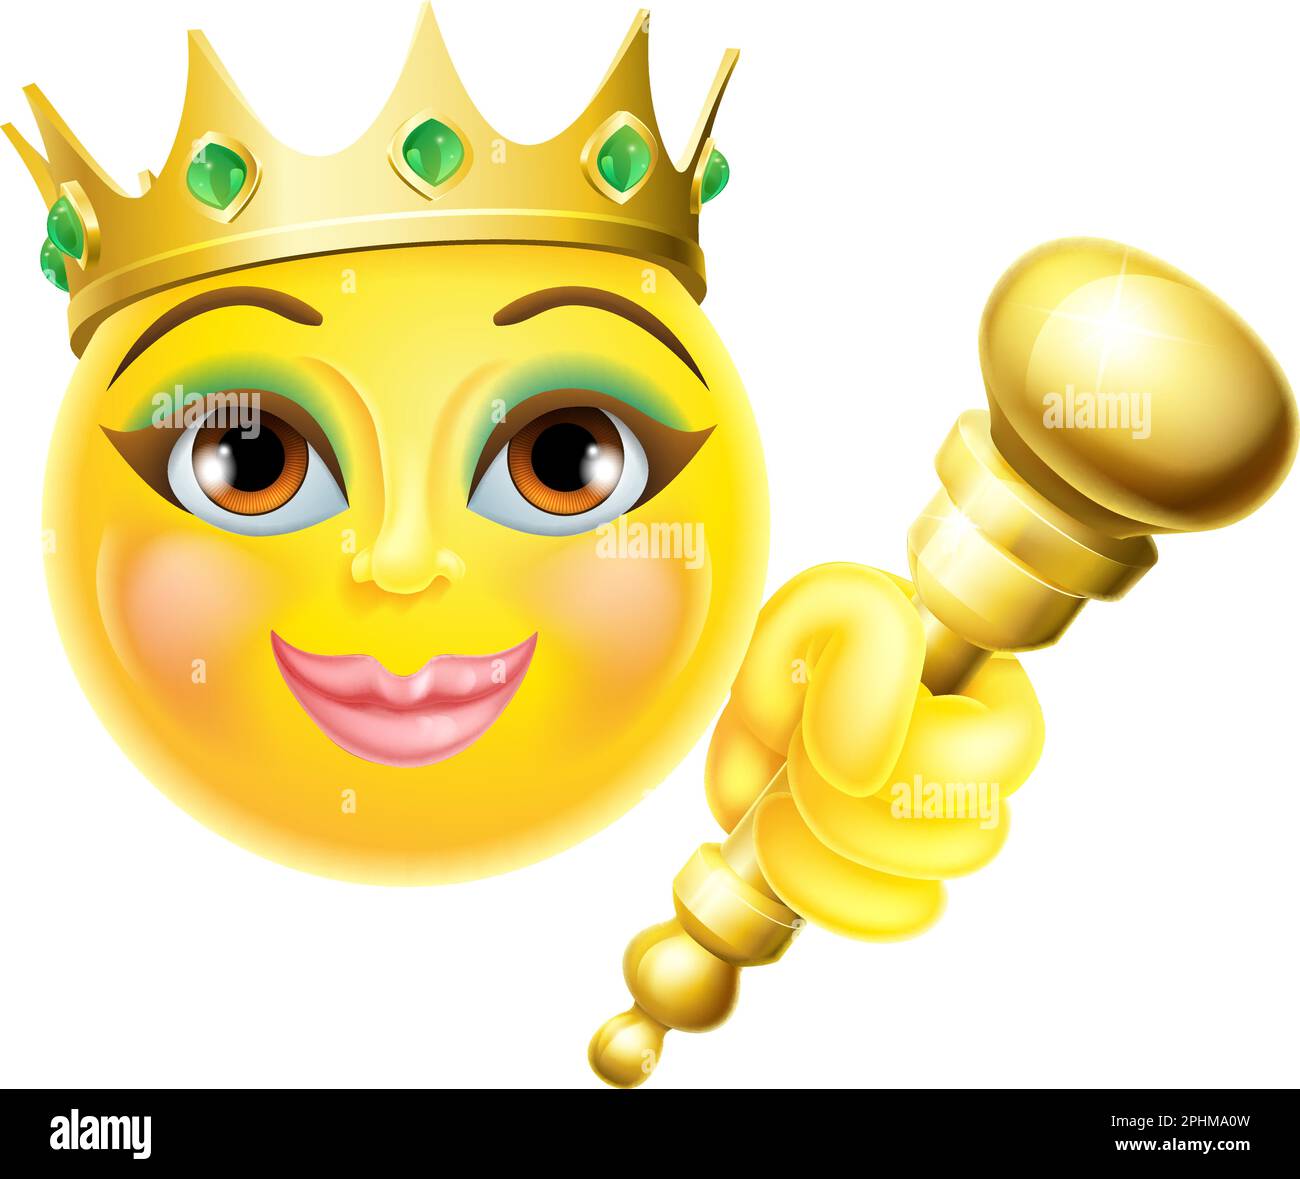 Königin Prinzessin Emoticon Gold Krone Cartoon Gesicht Stock Vektor